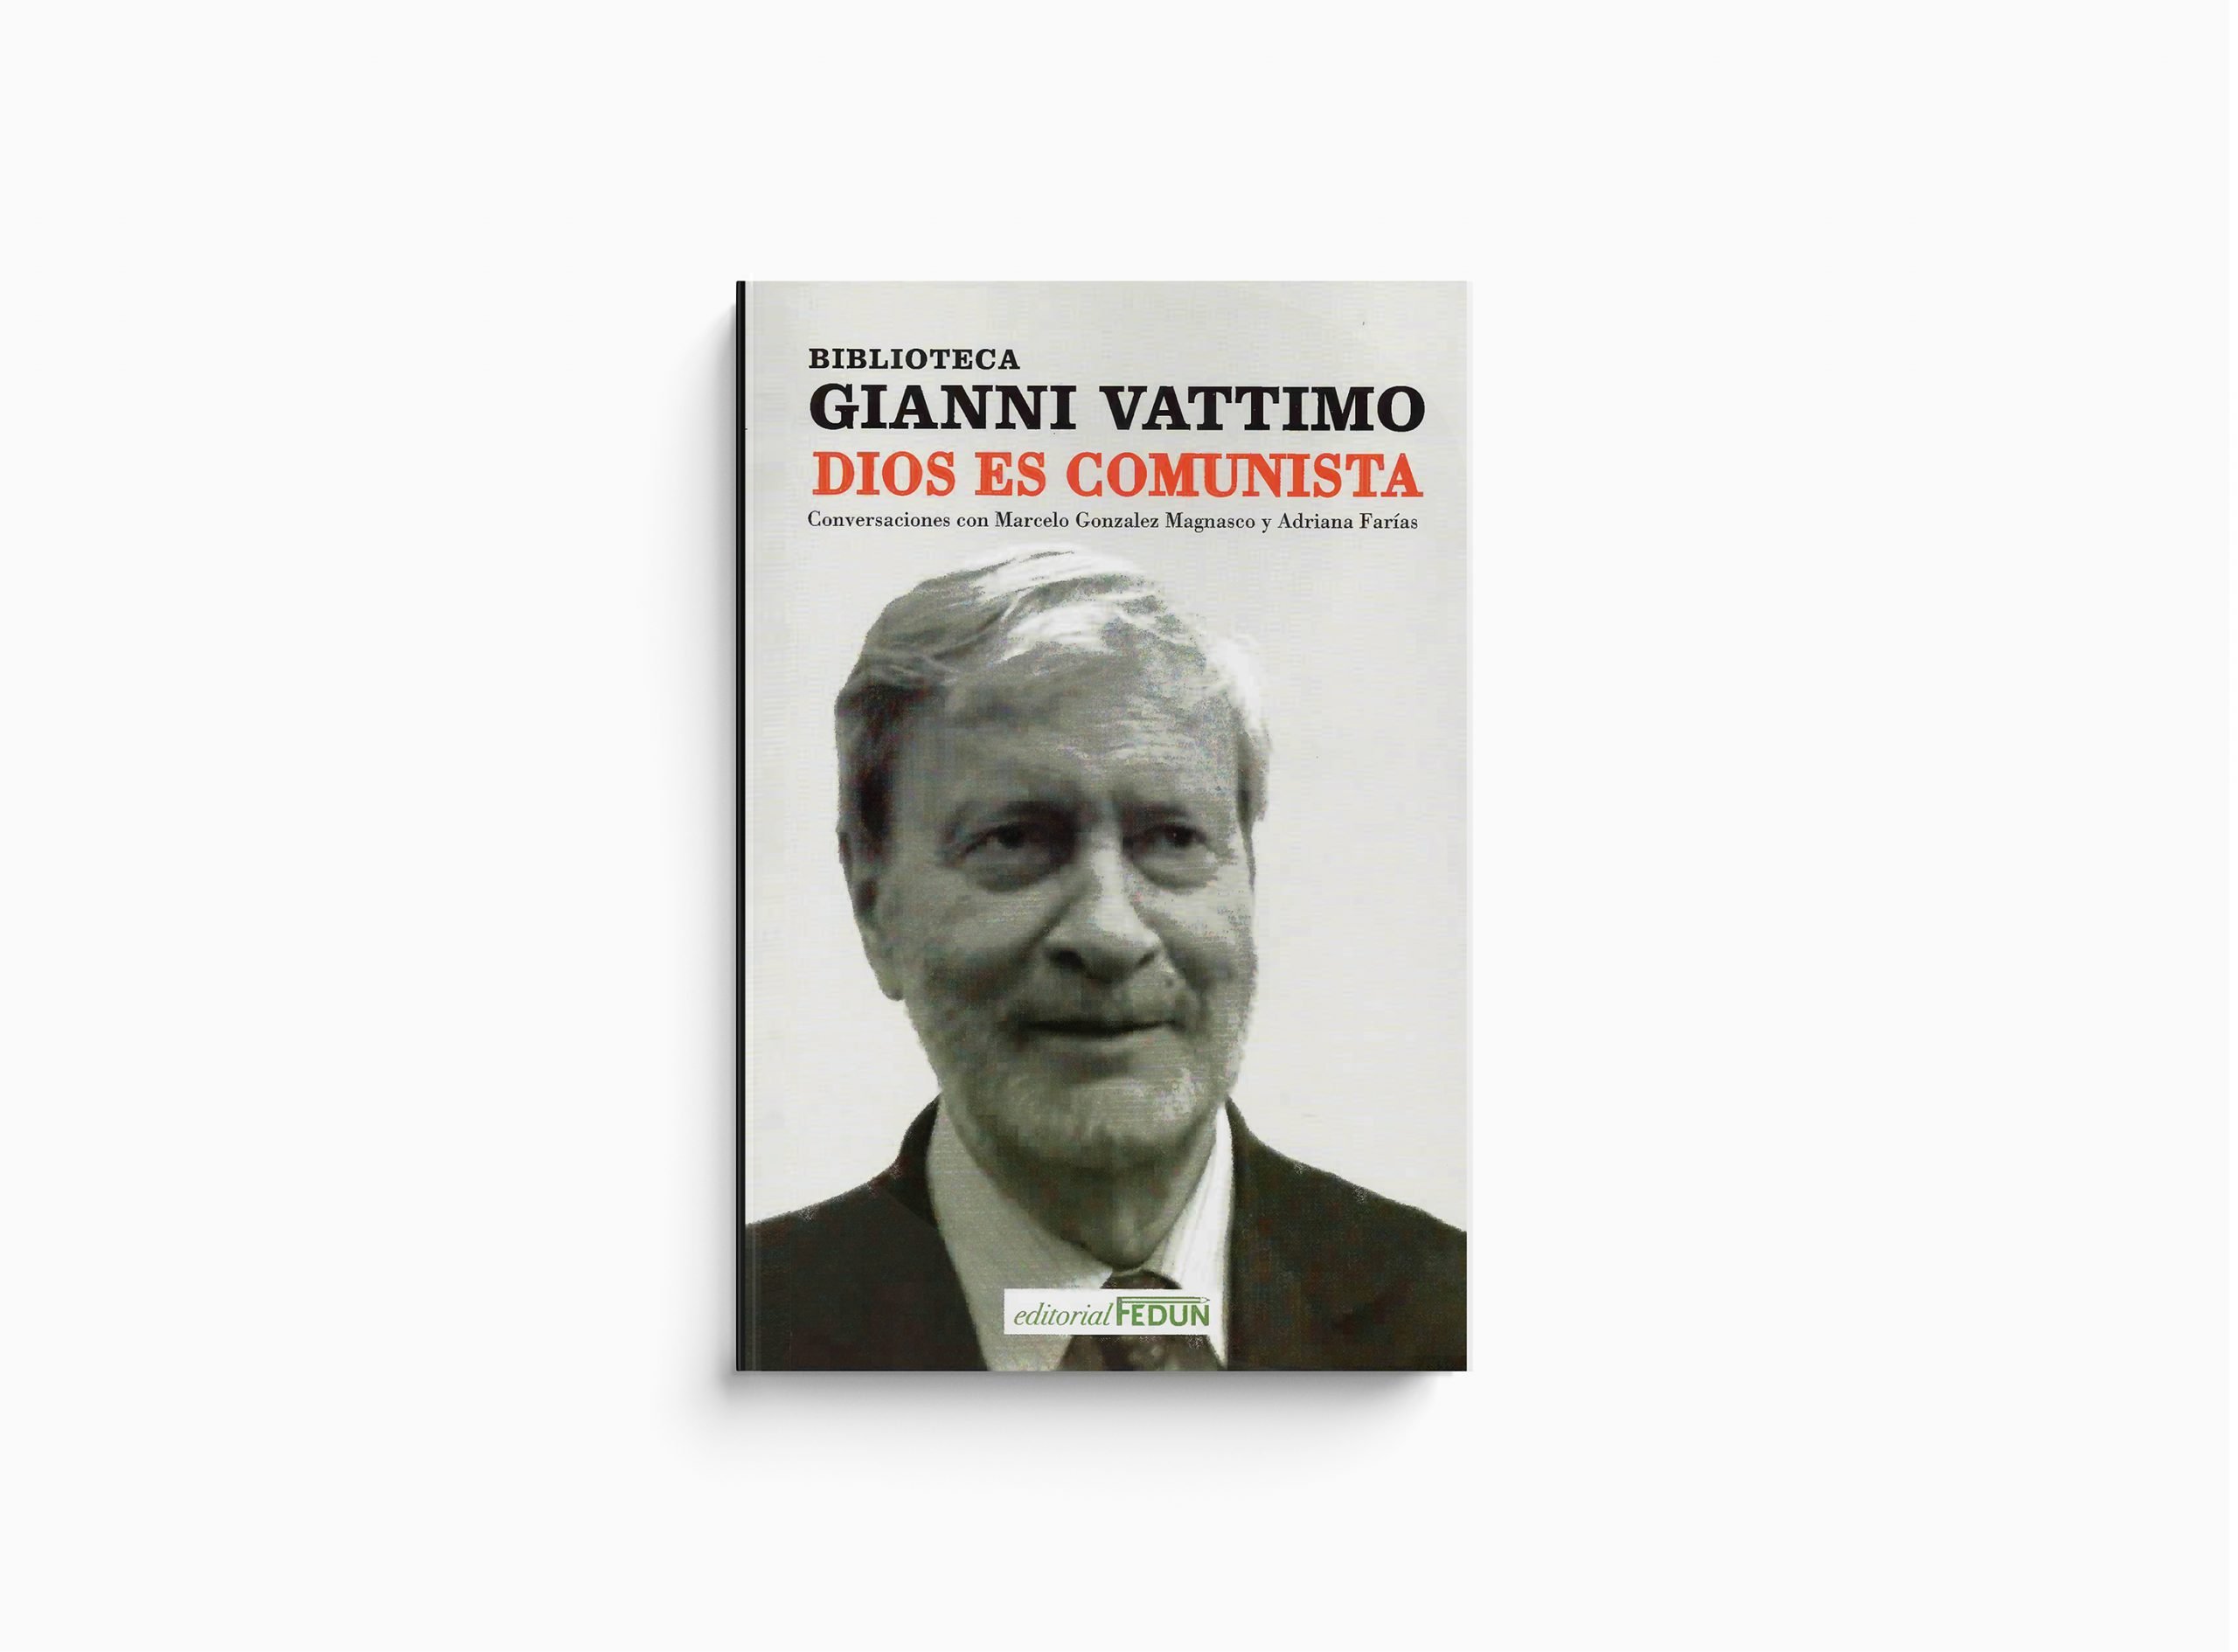 Gianni_Vattimo_Dios_es_comunista